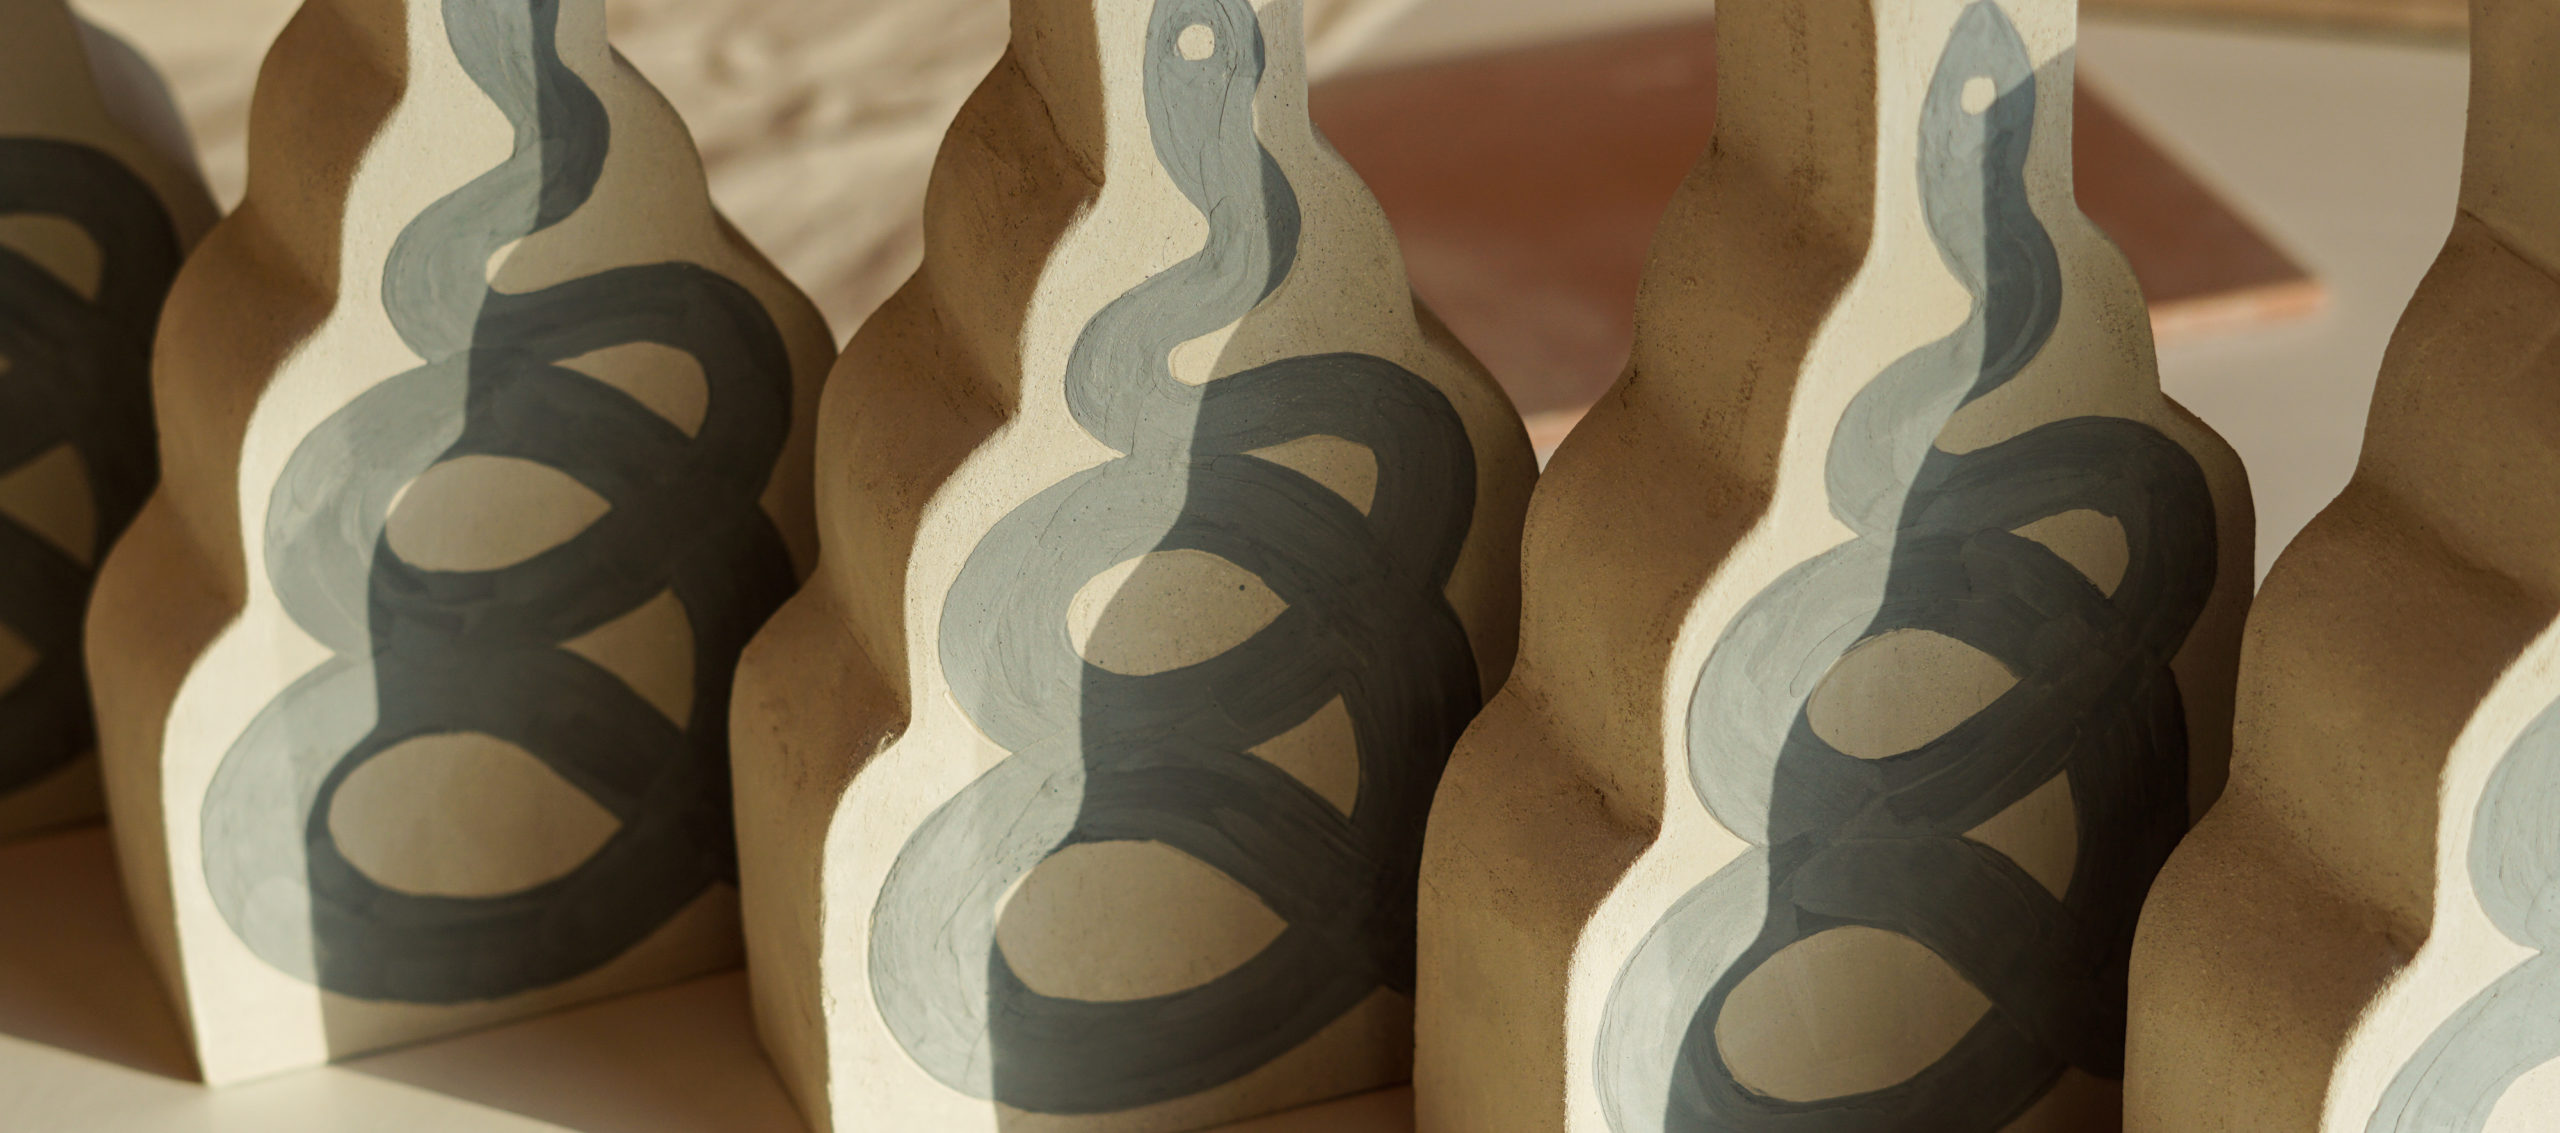 Misc, piezas artesanales de cerámica en pleno corazón de Ruzafa